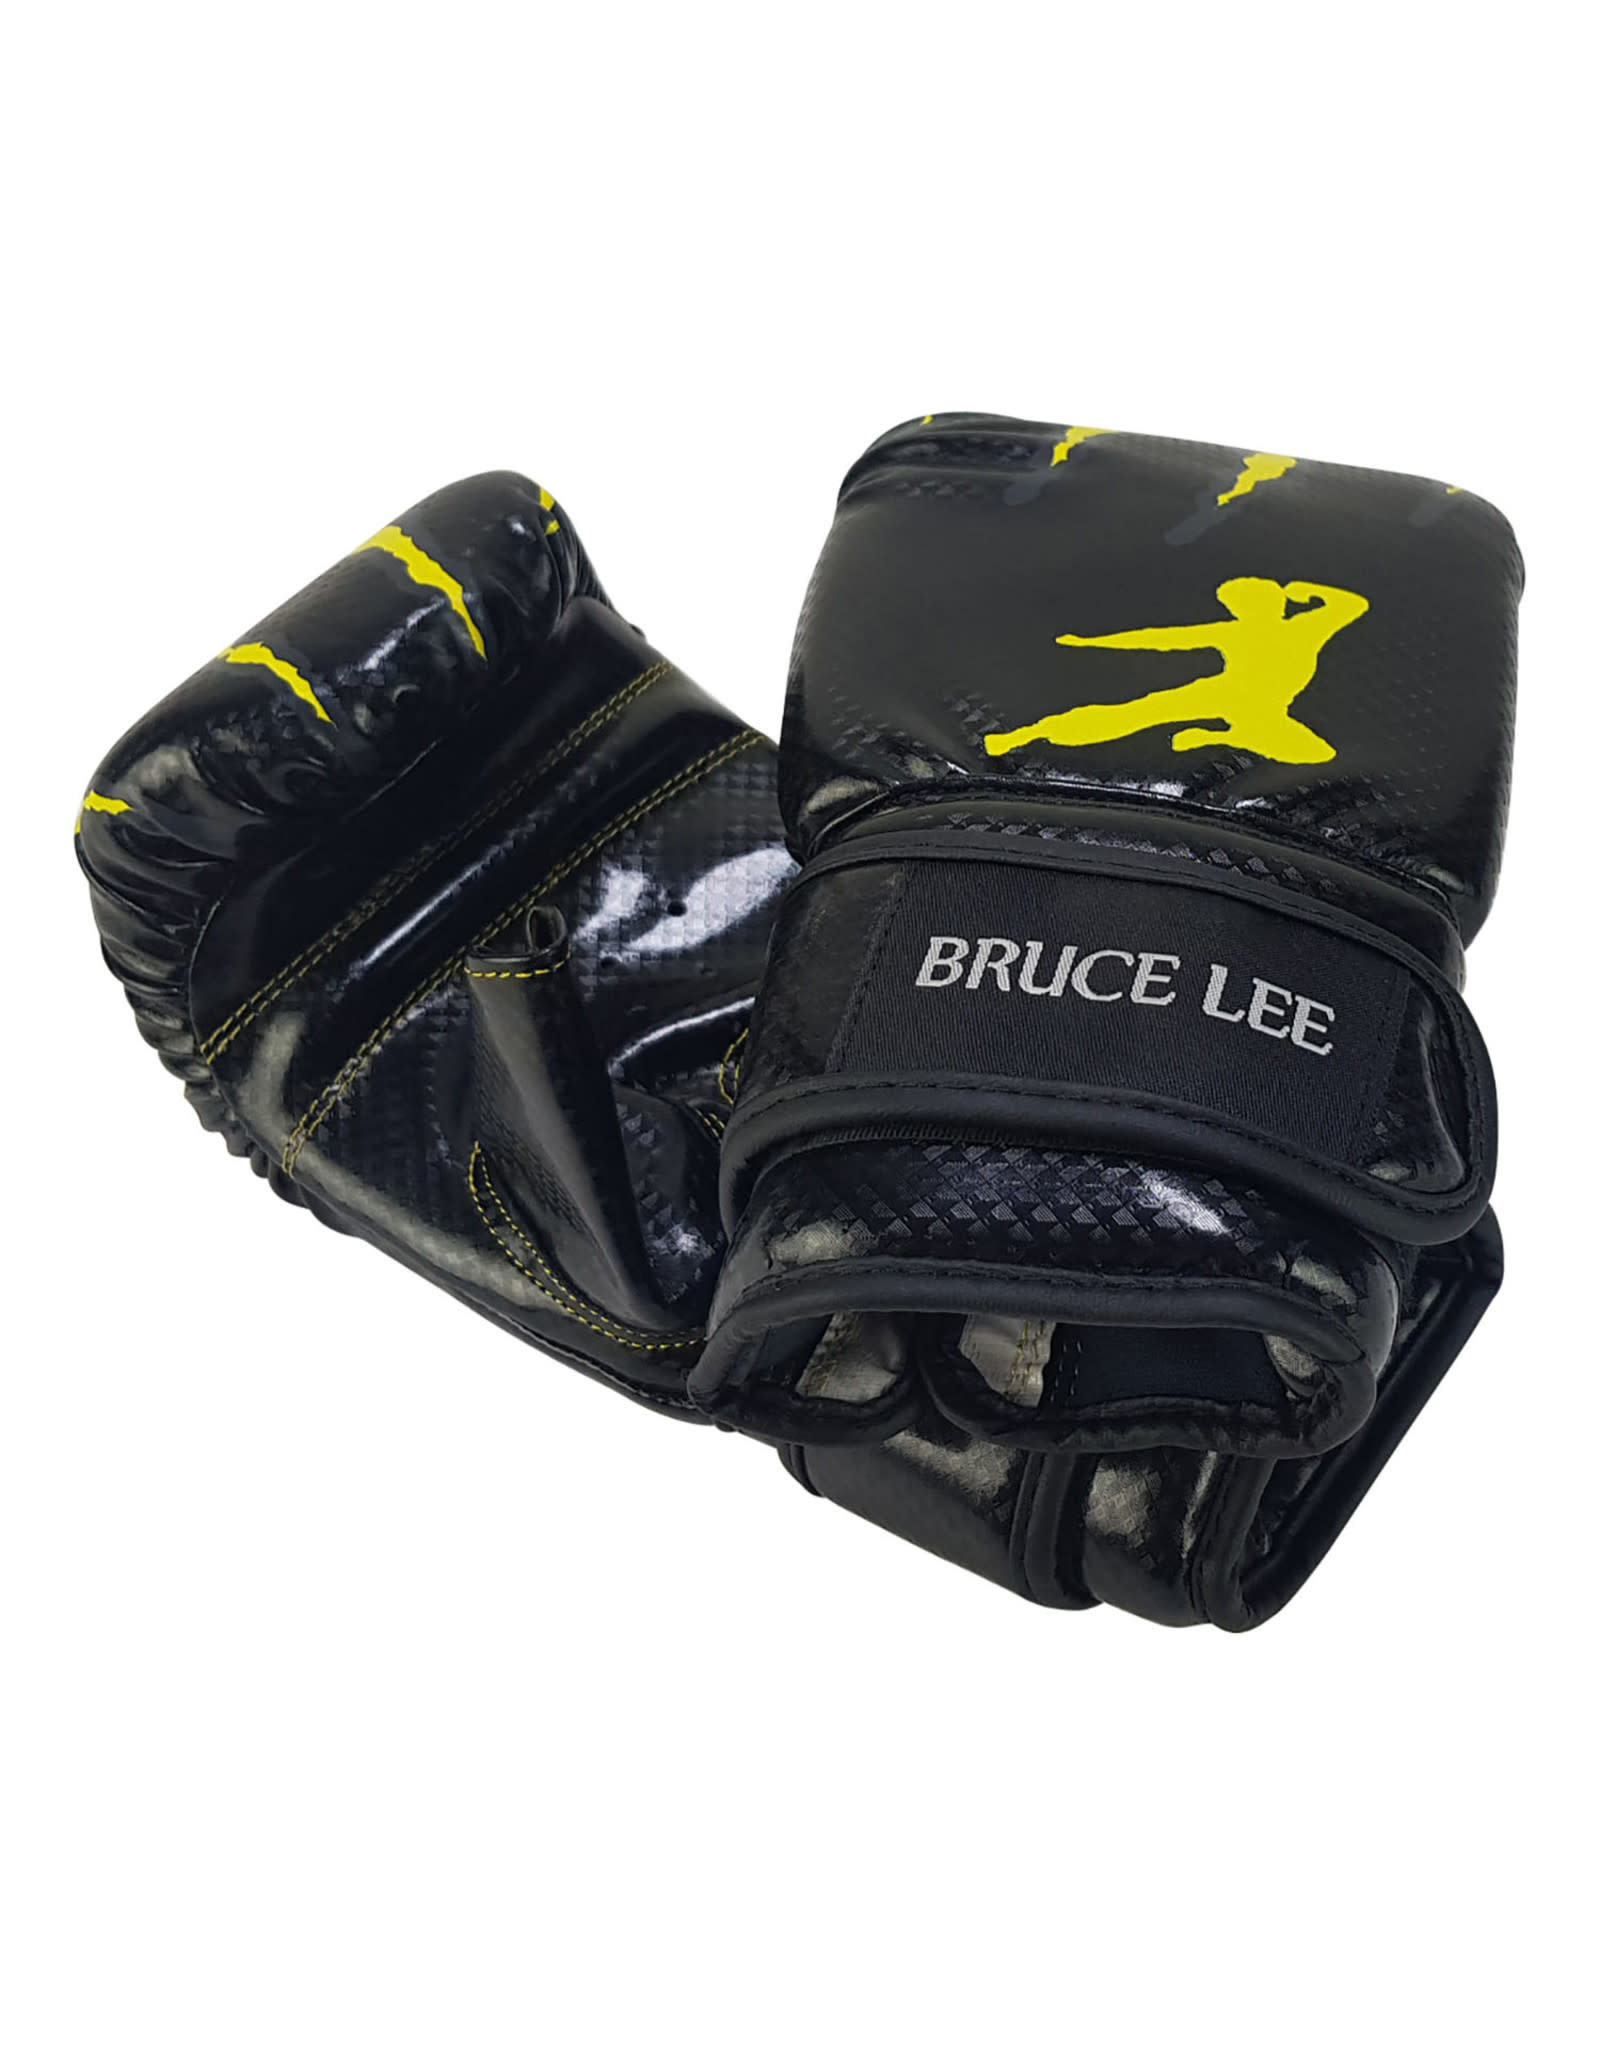 Bruce Lee Signature Bag Gloves